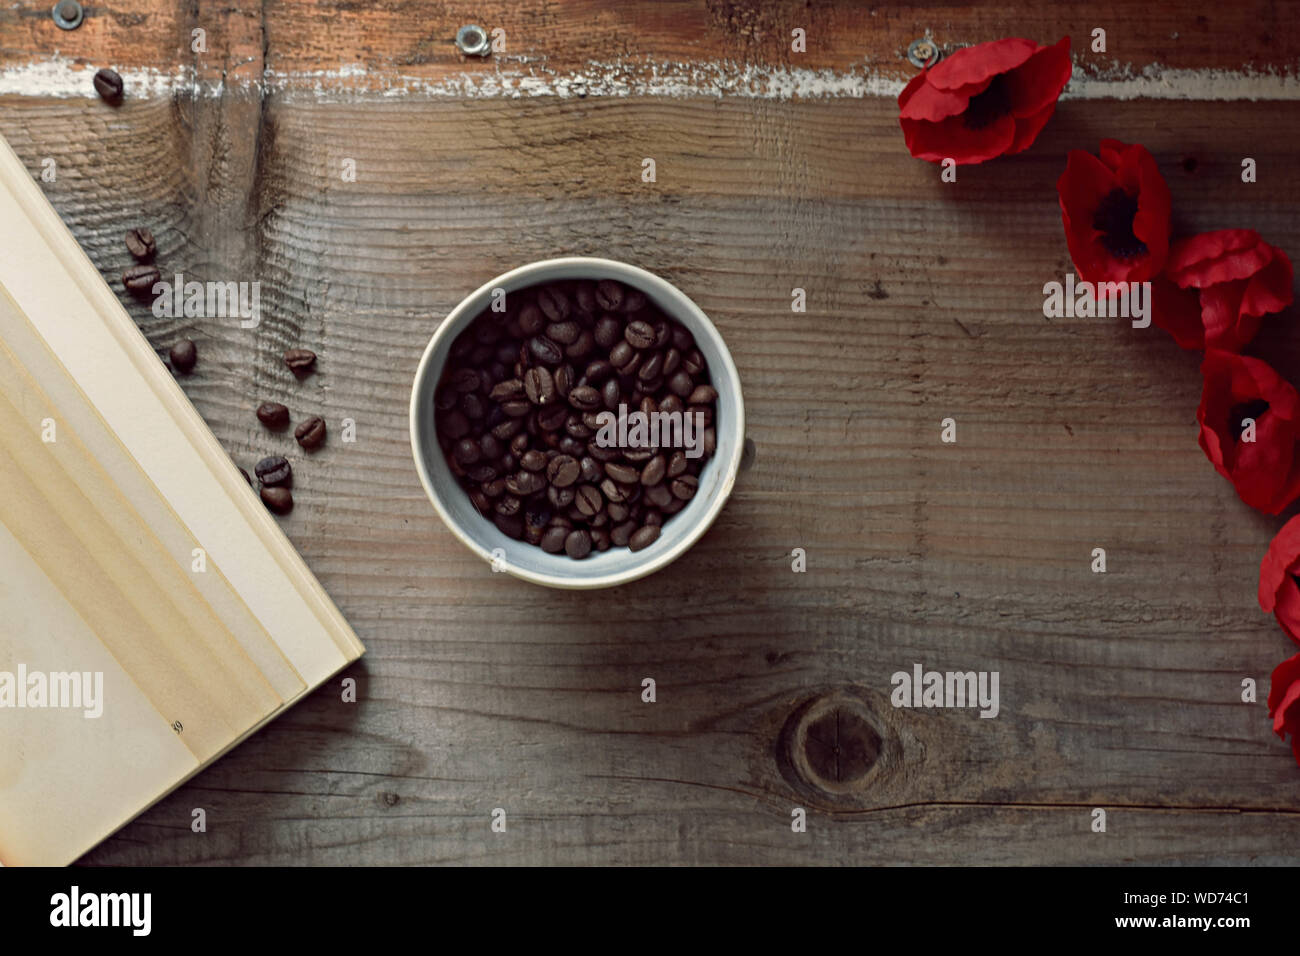 Kaffeebohnen, alte Buch und rote Blumen auf Holz- Hintergrund Stockfoto